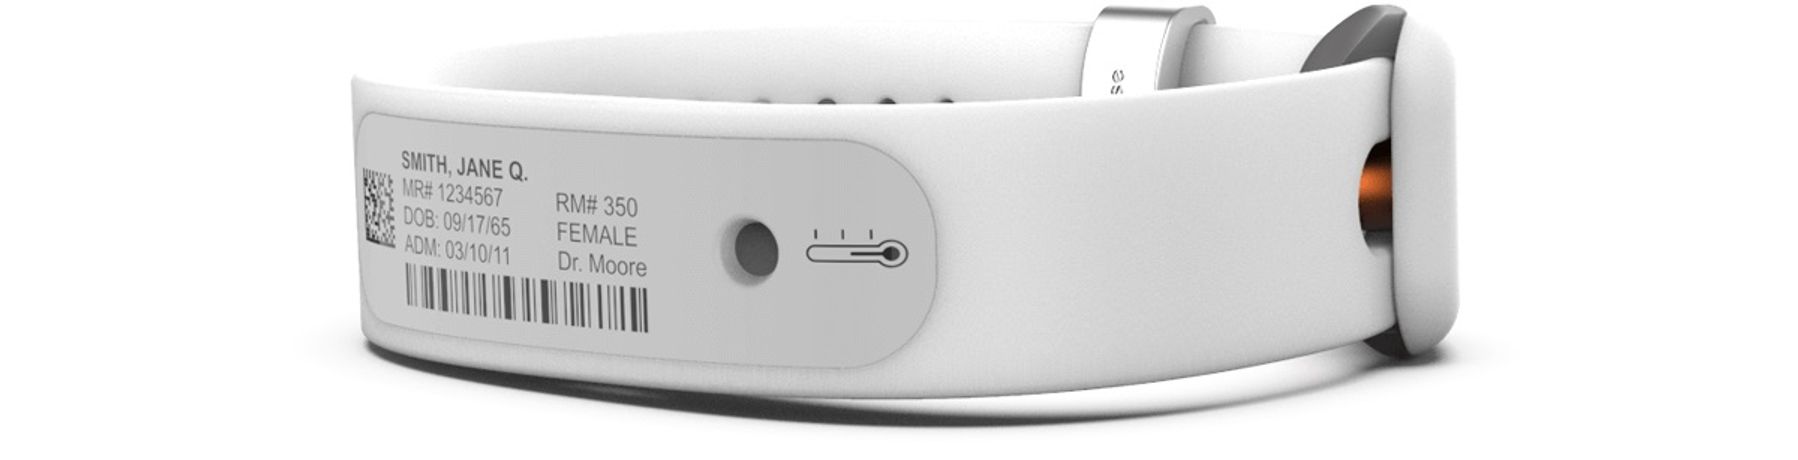 CardiacSense - Wristband Monitors